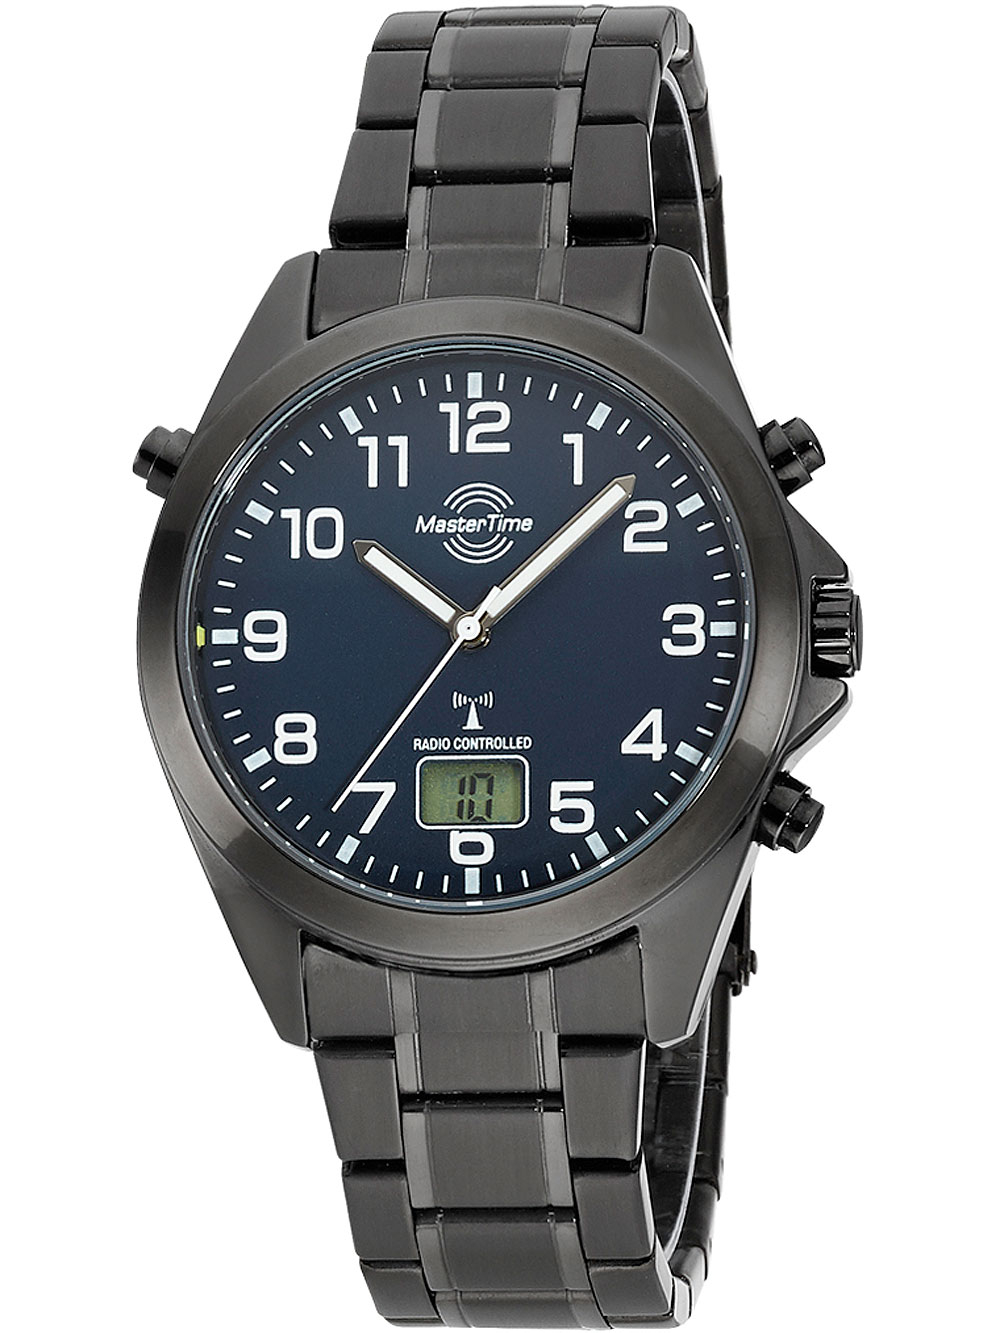 ROZETKA: часы закаленным Наручные Украине брендовые часы Master Time купить с отзывы, Киеве, в цены на стеклом в